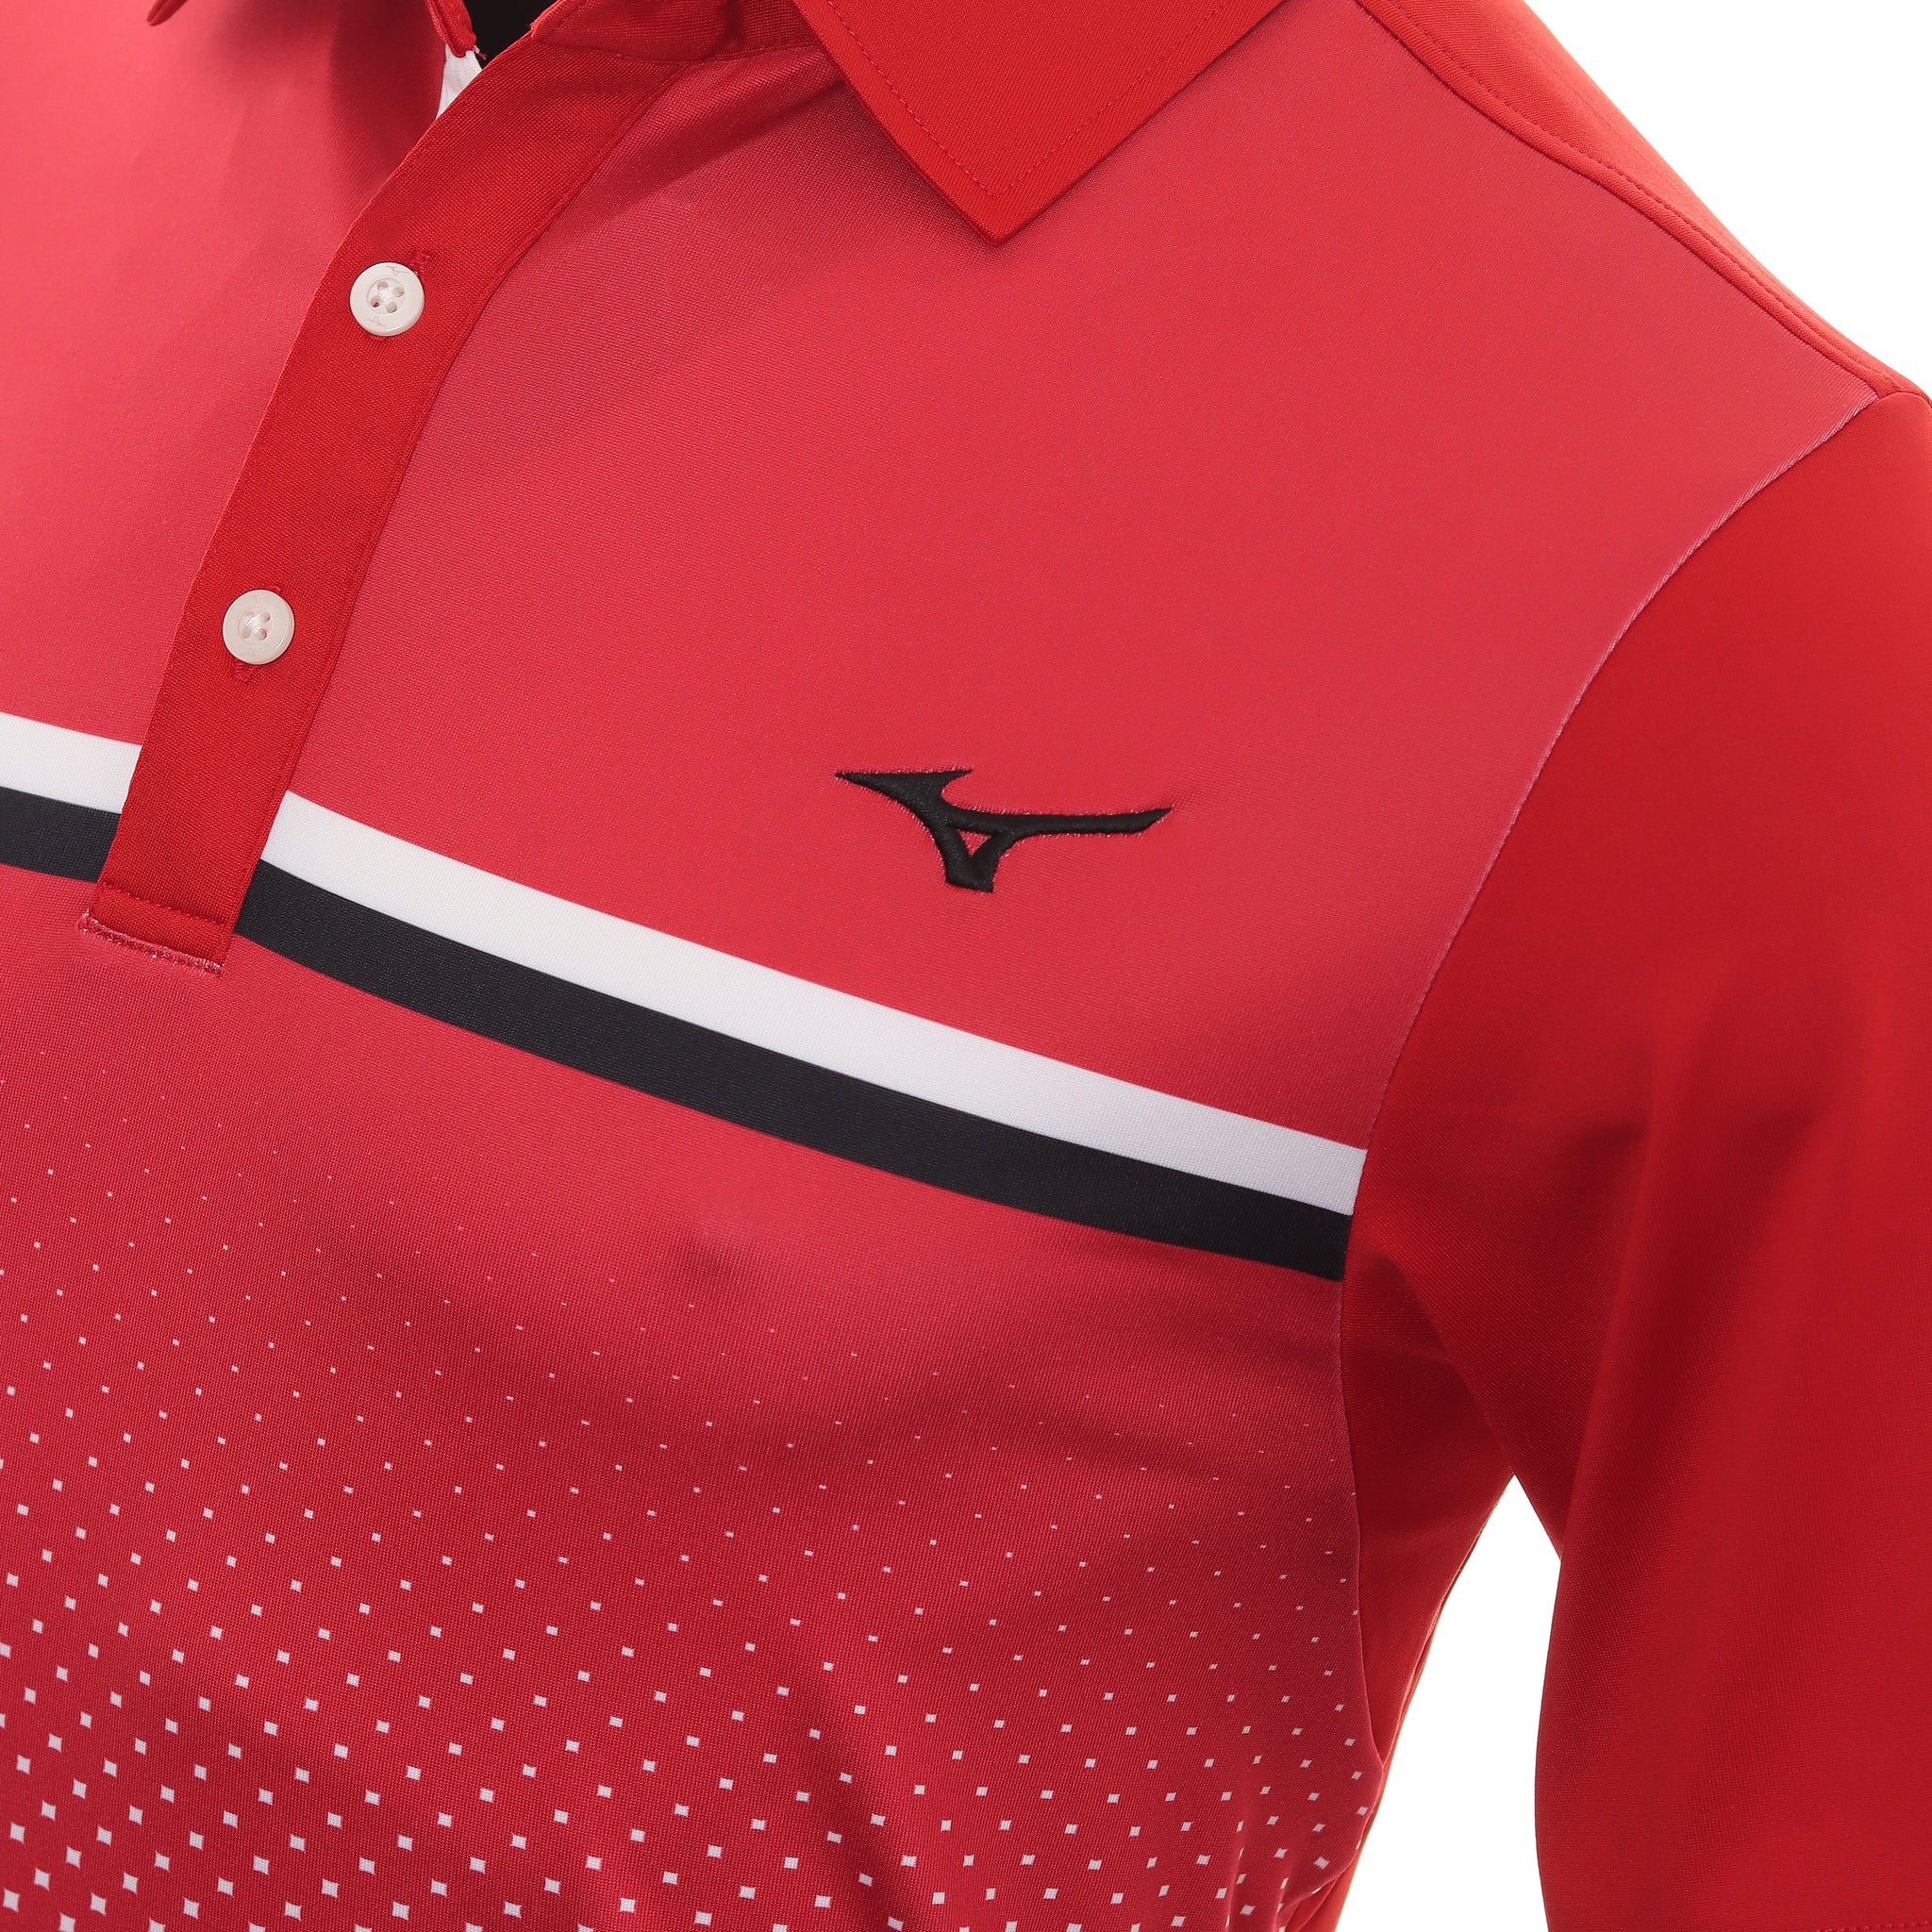 mizuno-golf-quick-dry-elite-gradient-shirt-52ga2010-red-62